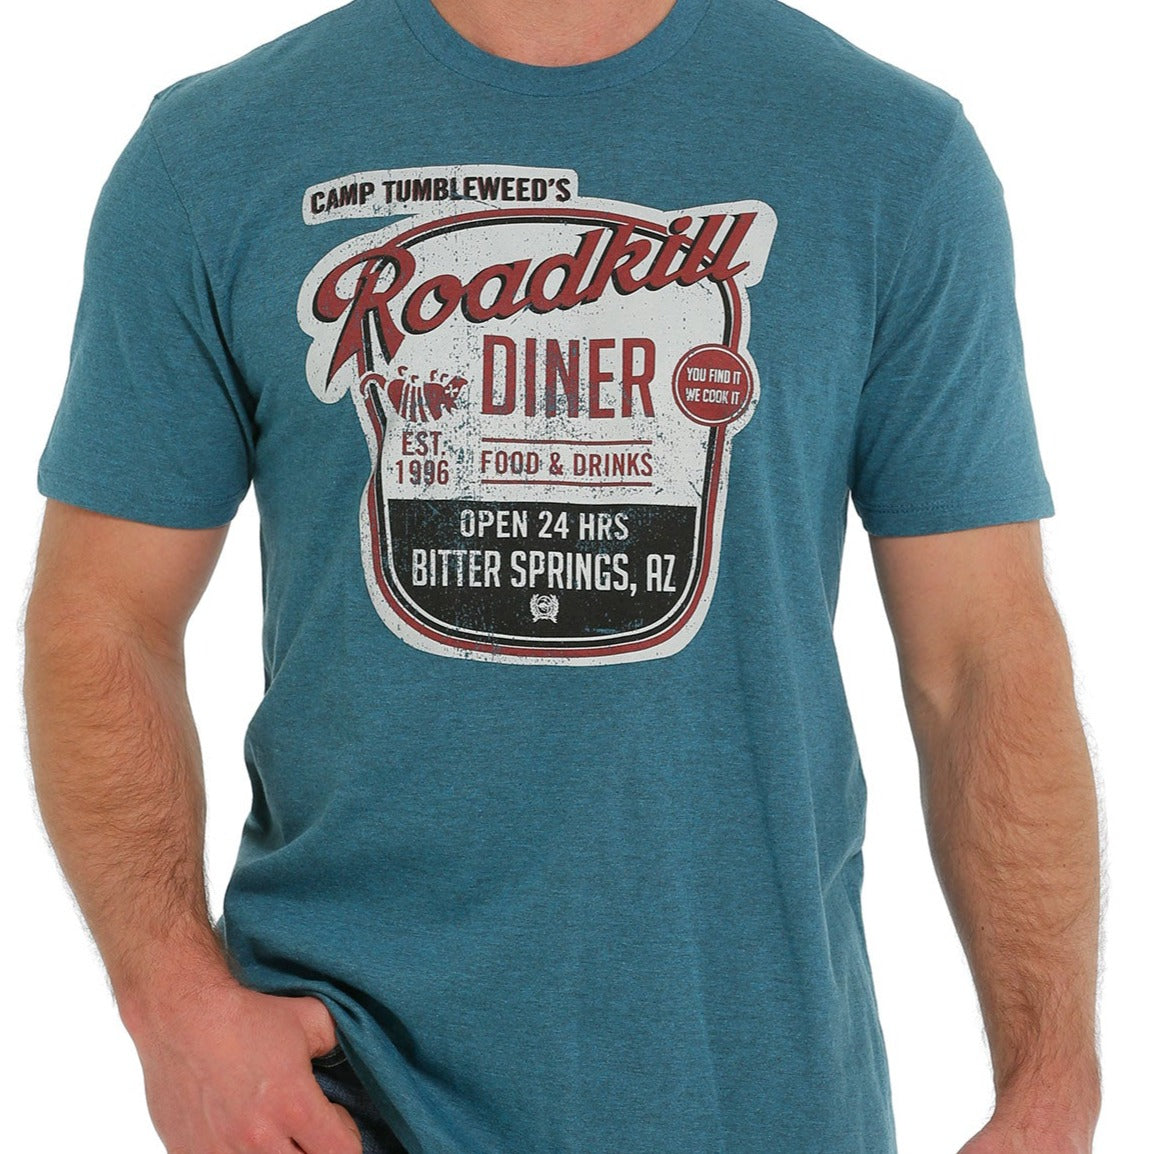 Cinch Men's Camp Tumbleweed Road Kill Diner T-Shirt